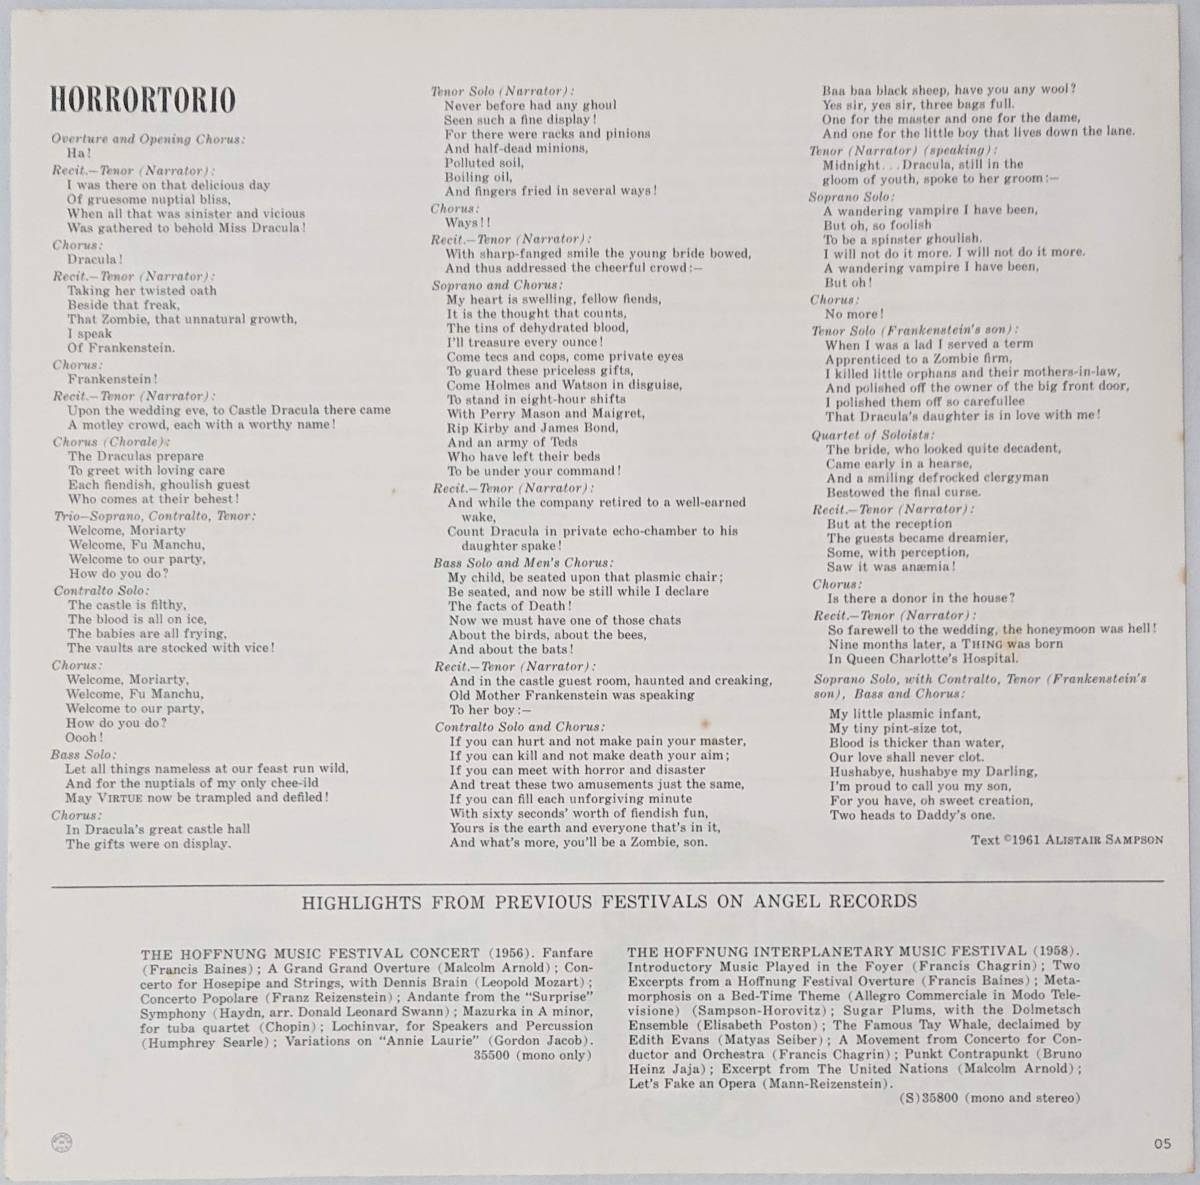 ジェラルド・ホフヌング : The Hoffnung Astronautical Music Festival 1961 US盤 中古 アナログ LPレコード盤 1961年 S 35828 M2-KDO-677_画像9